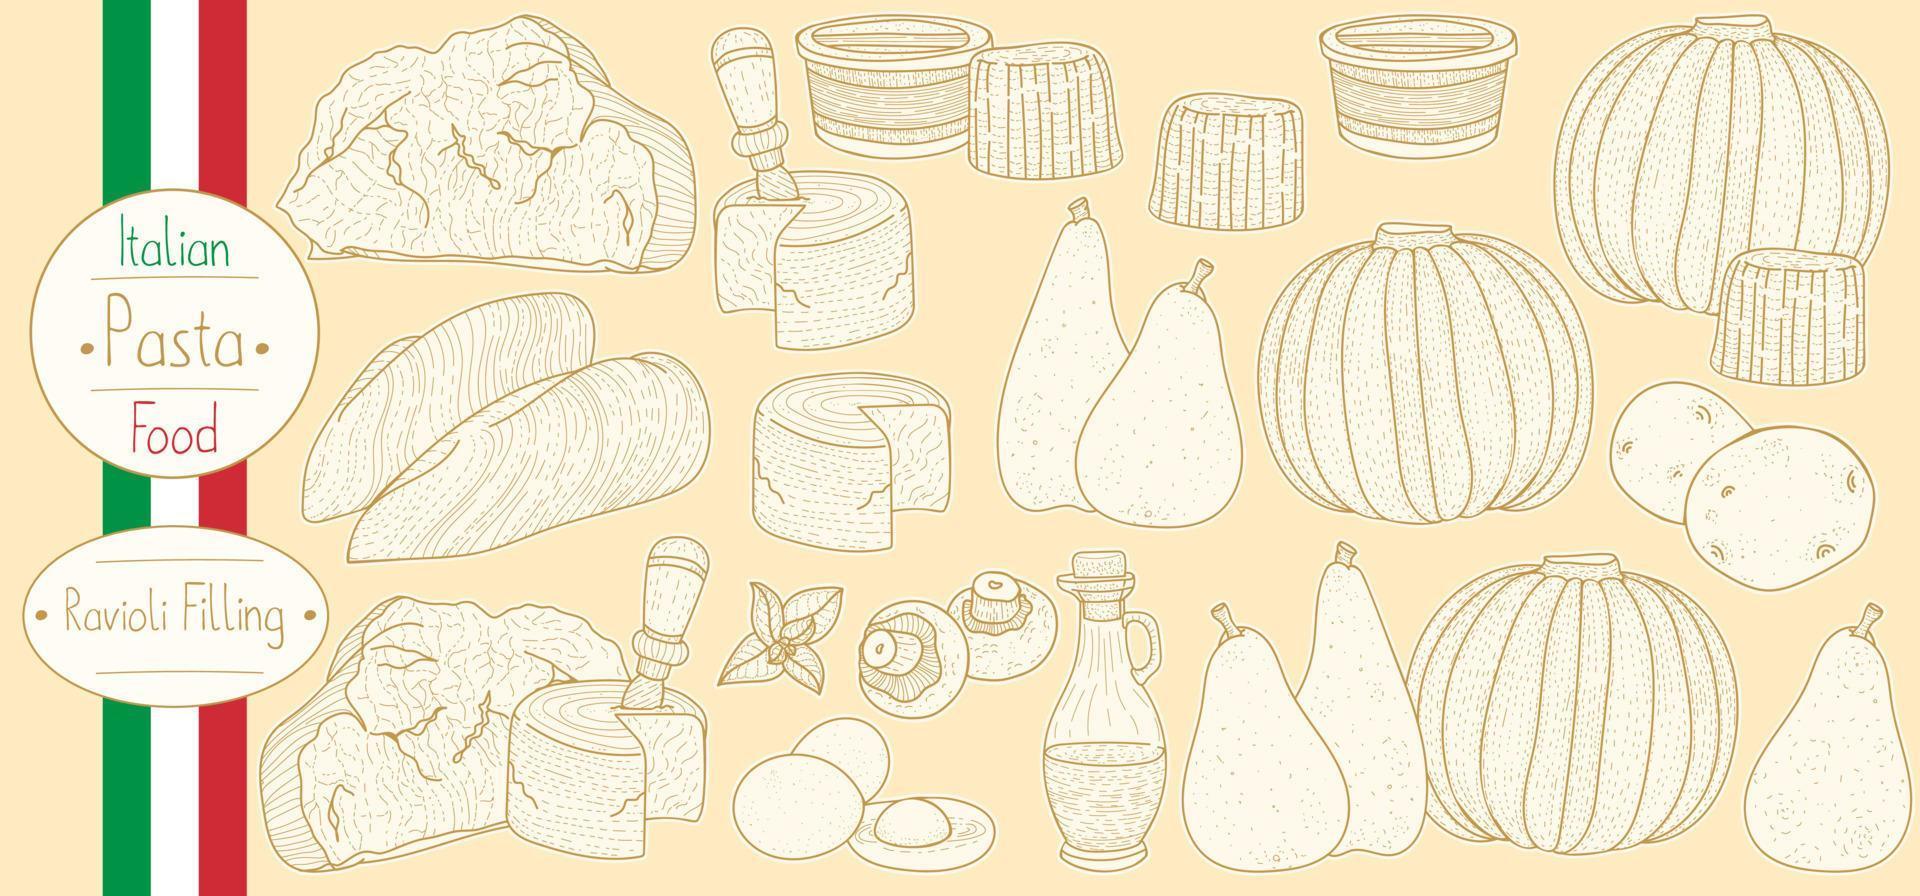 huvudingredienser för fylld pastafyllning för att laga italiensk mat ravioli, skissa illustration i vintage stil vektor